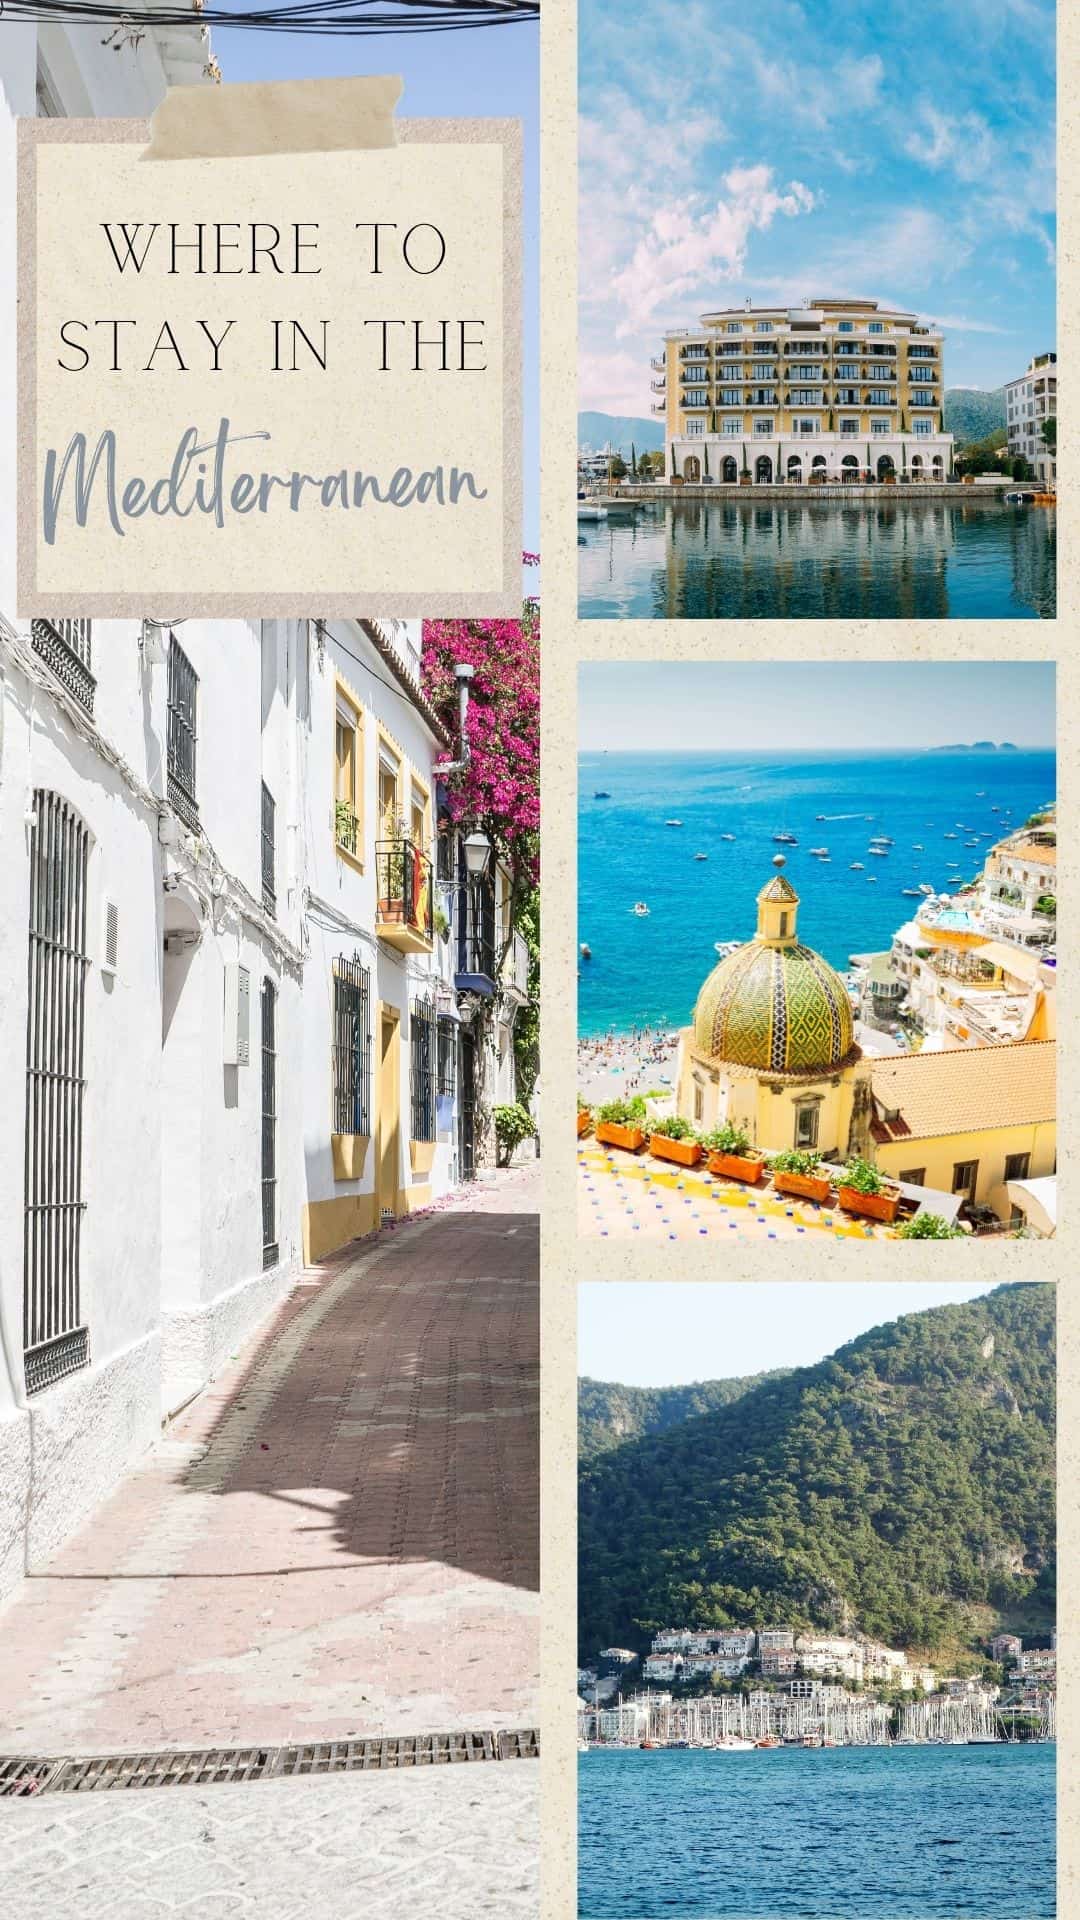 luxury hotels, resorts, boutique hotel Mediterranean Riviera, Europe